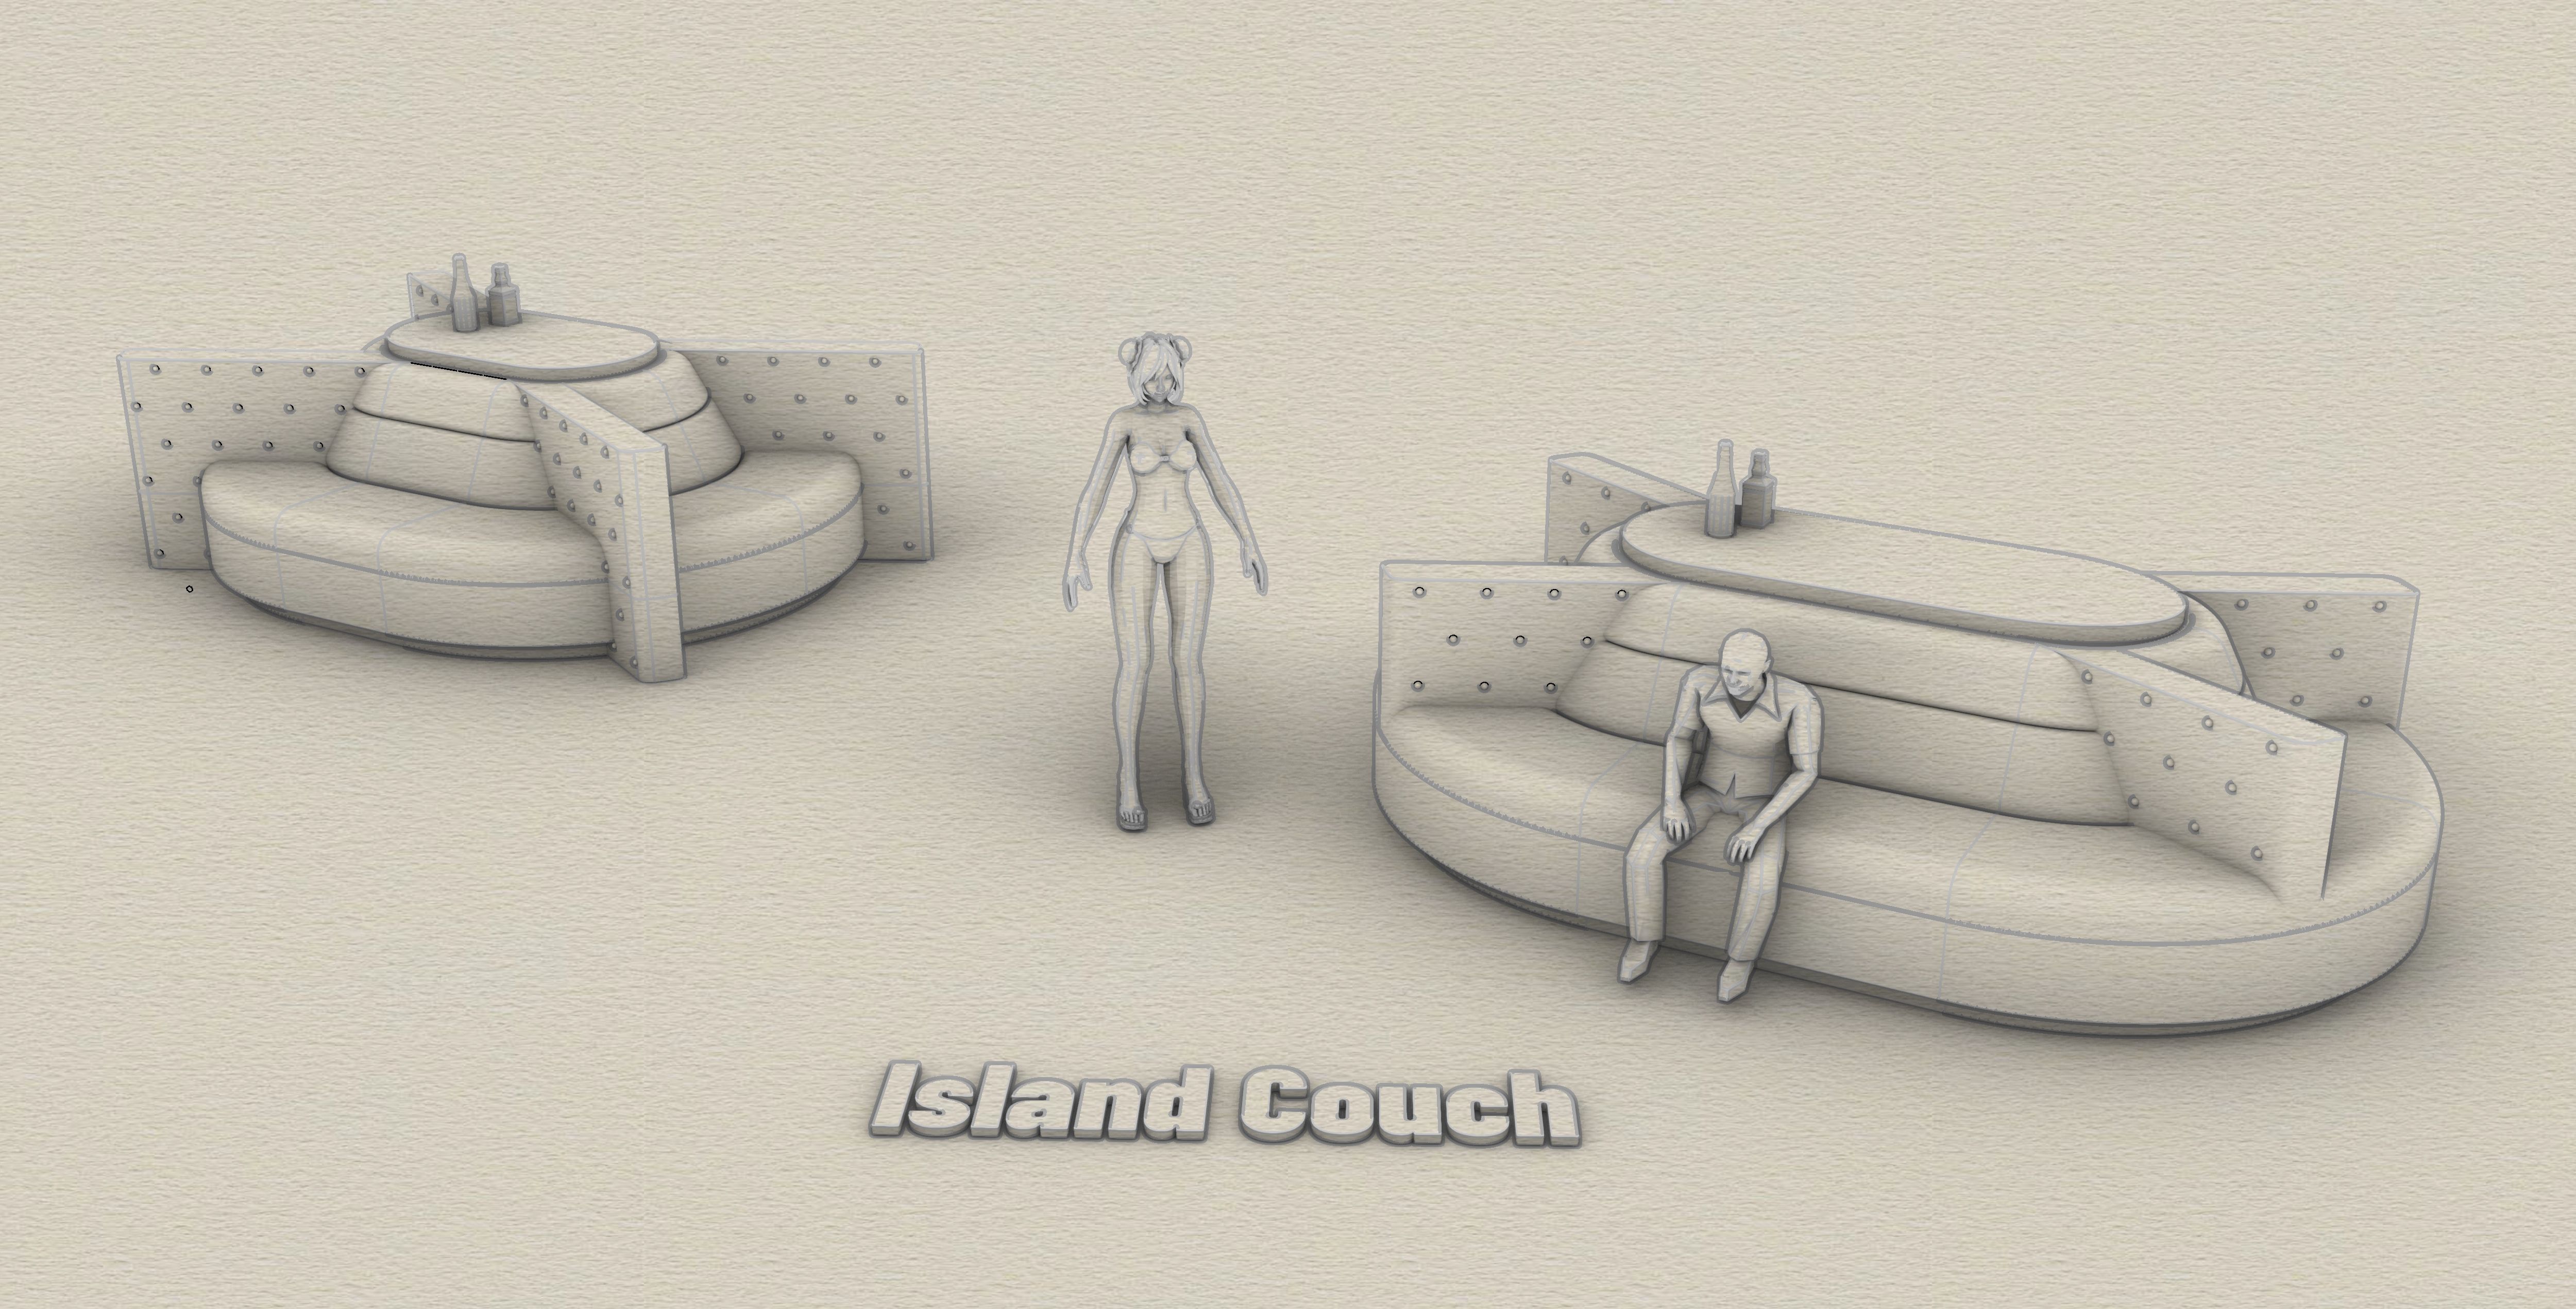 nightclub Island couch 3d model